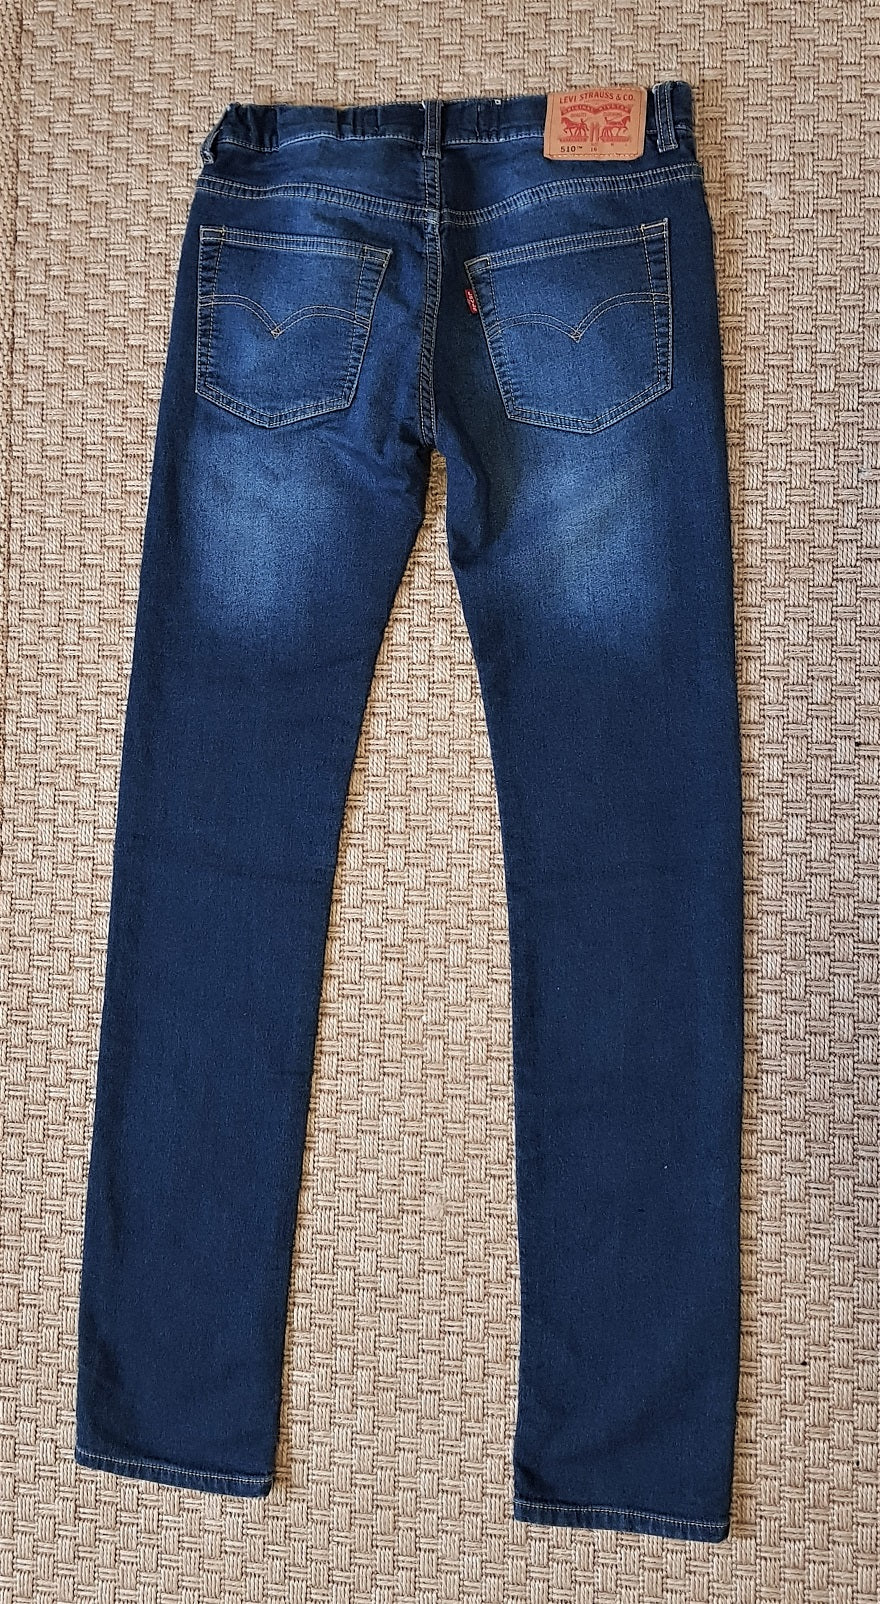 Leviâs 510 skinny stretch teen jeans â The Frockery